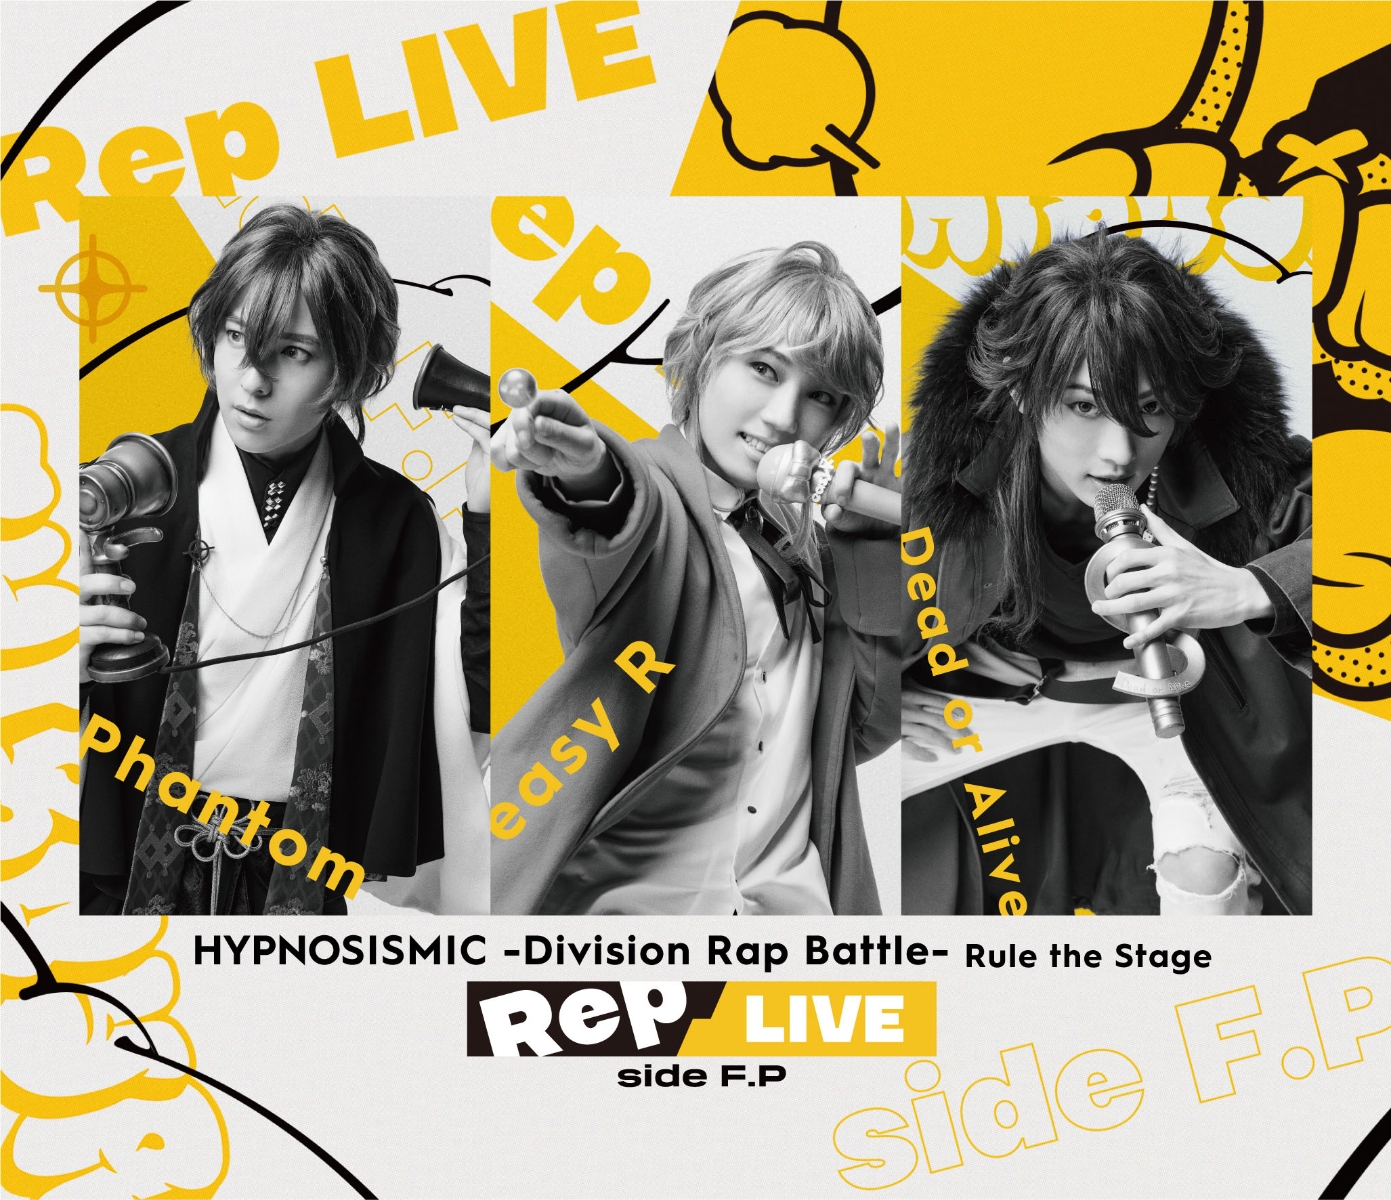 楽天ブックス: 『ヒプノシスマイク -Division Rap Battle-』Rule the Stage 《Rep LIVE side  (Blu-ray  CD)【Blu-ray】 ヒプノシスマイクーDivision Rap Battle-Rule the Stage  4988003878177 DVD